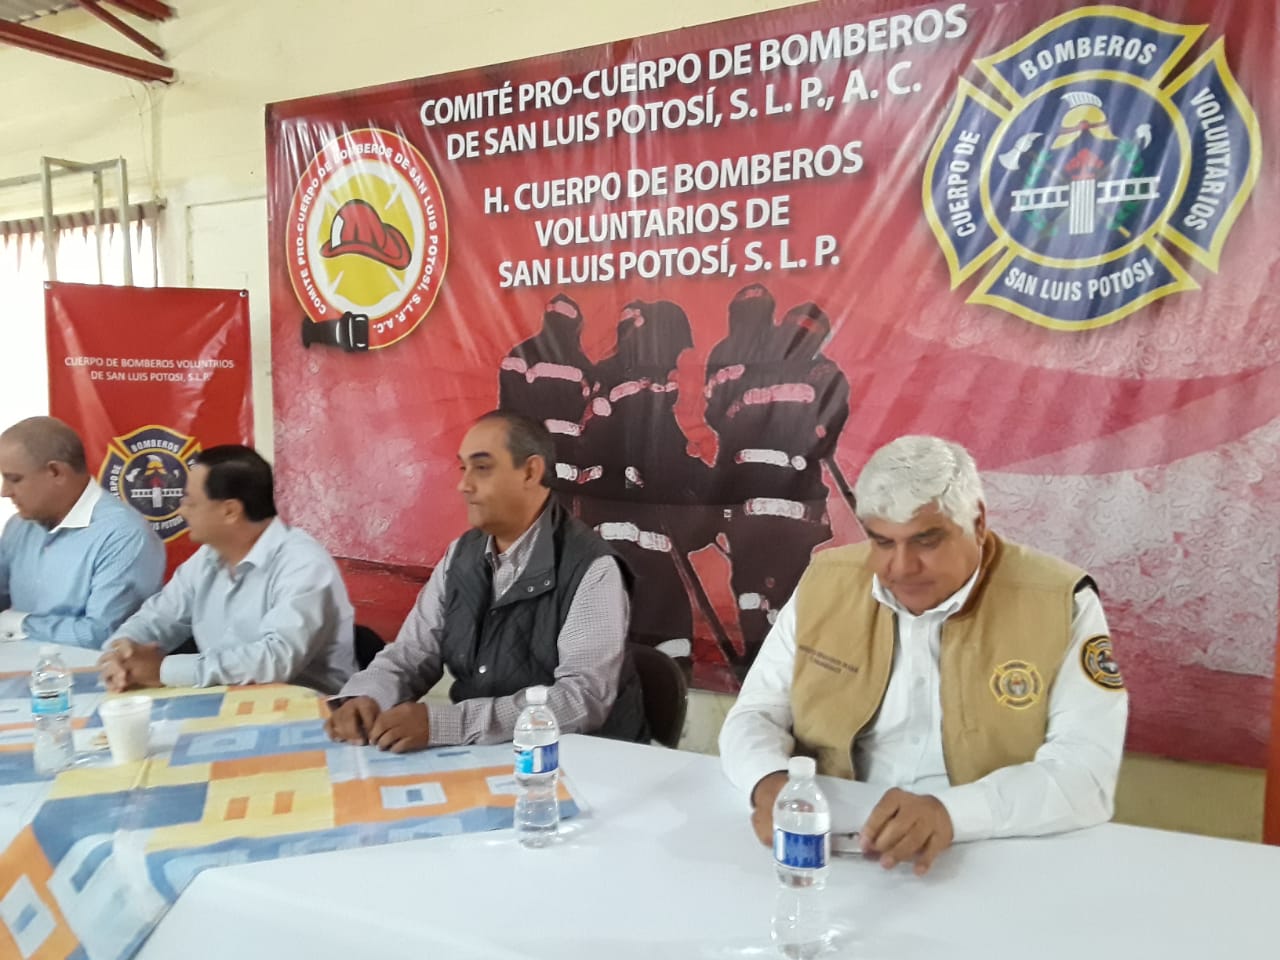  Gallardo dejó deuda de 800 mil pesos con Cuerpo de Bomberos